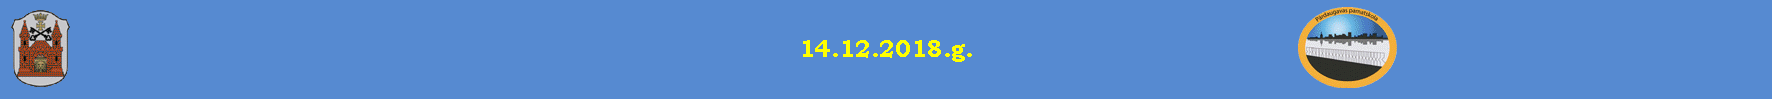 14.12.2018.g.